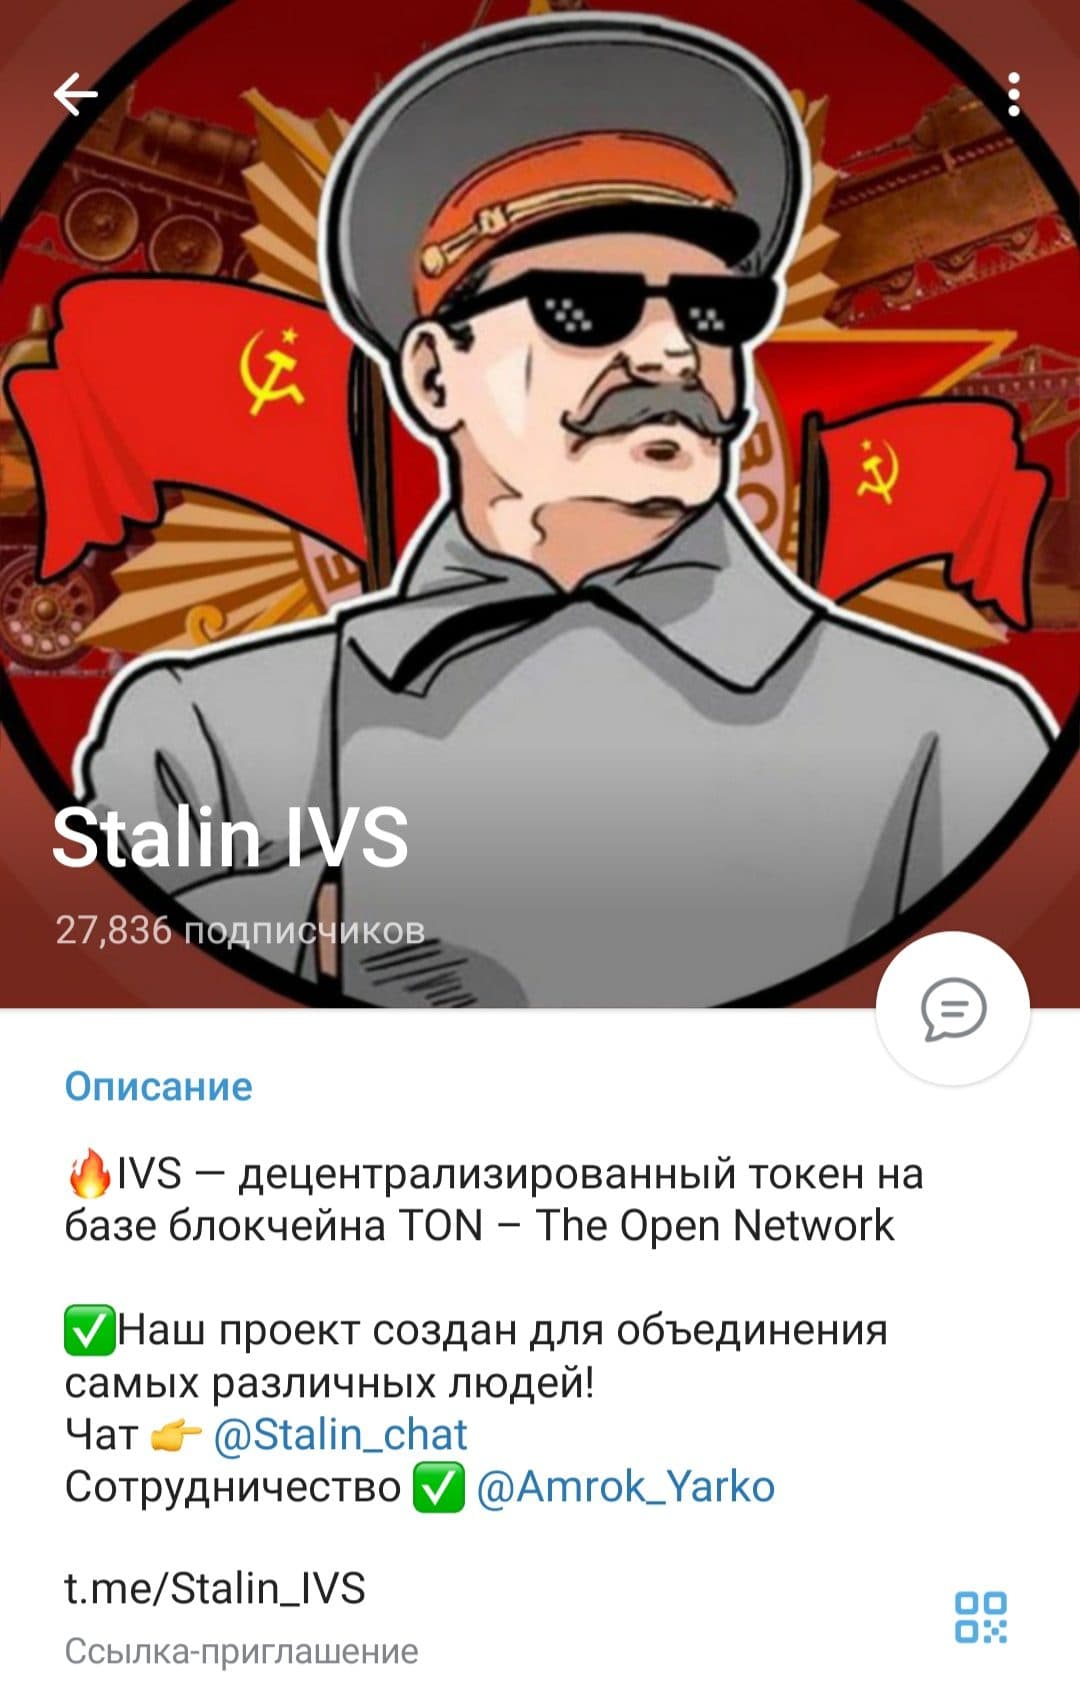 IVS - Stalin телеграмм